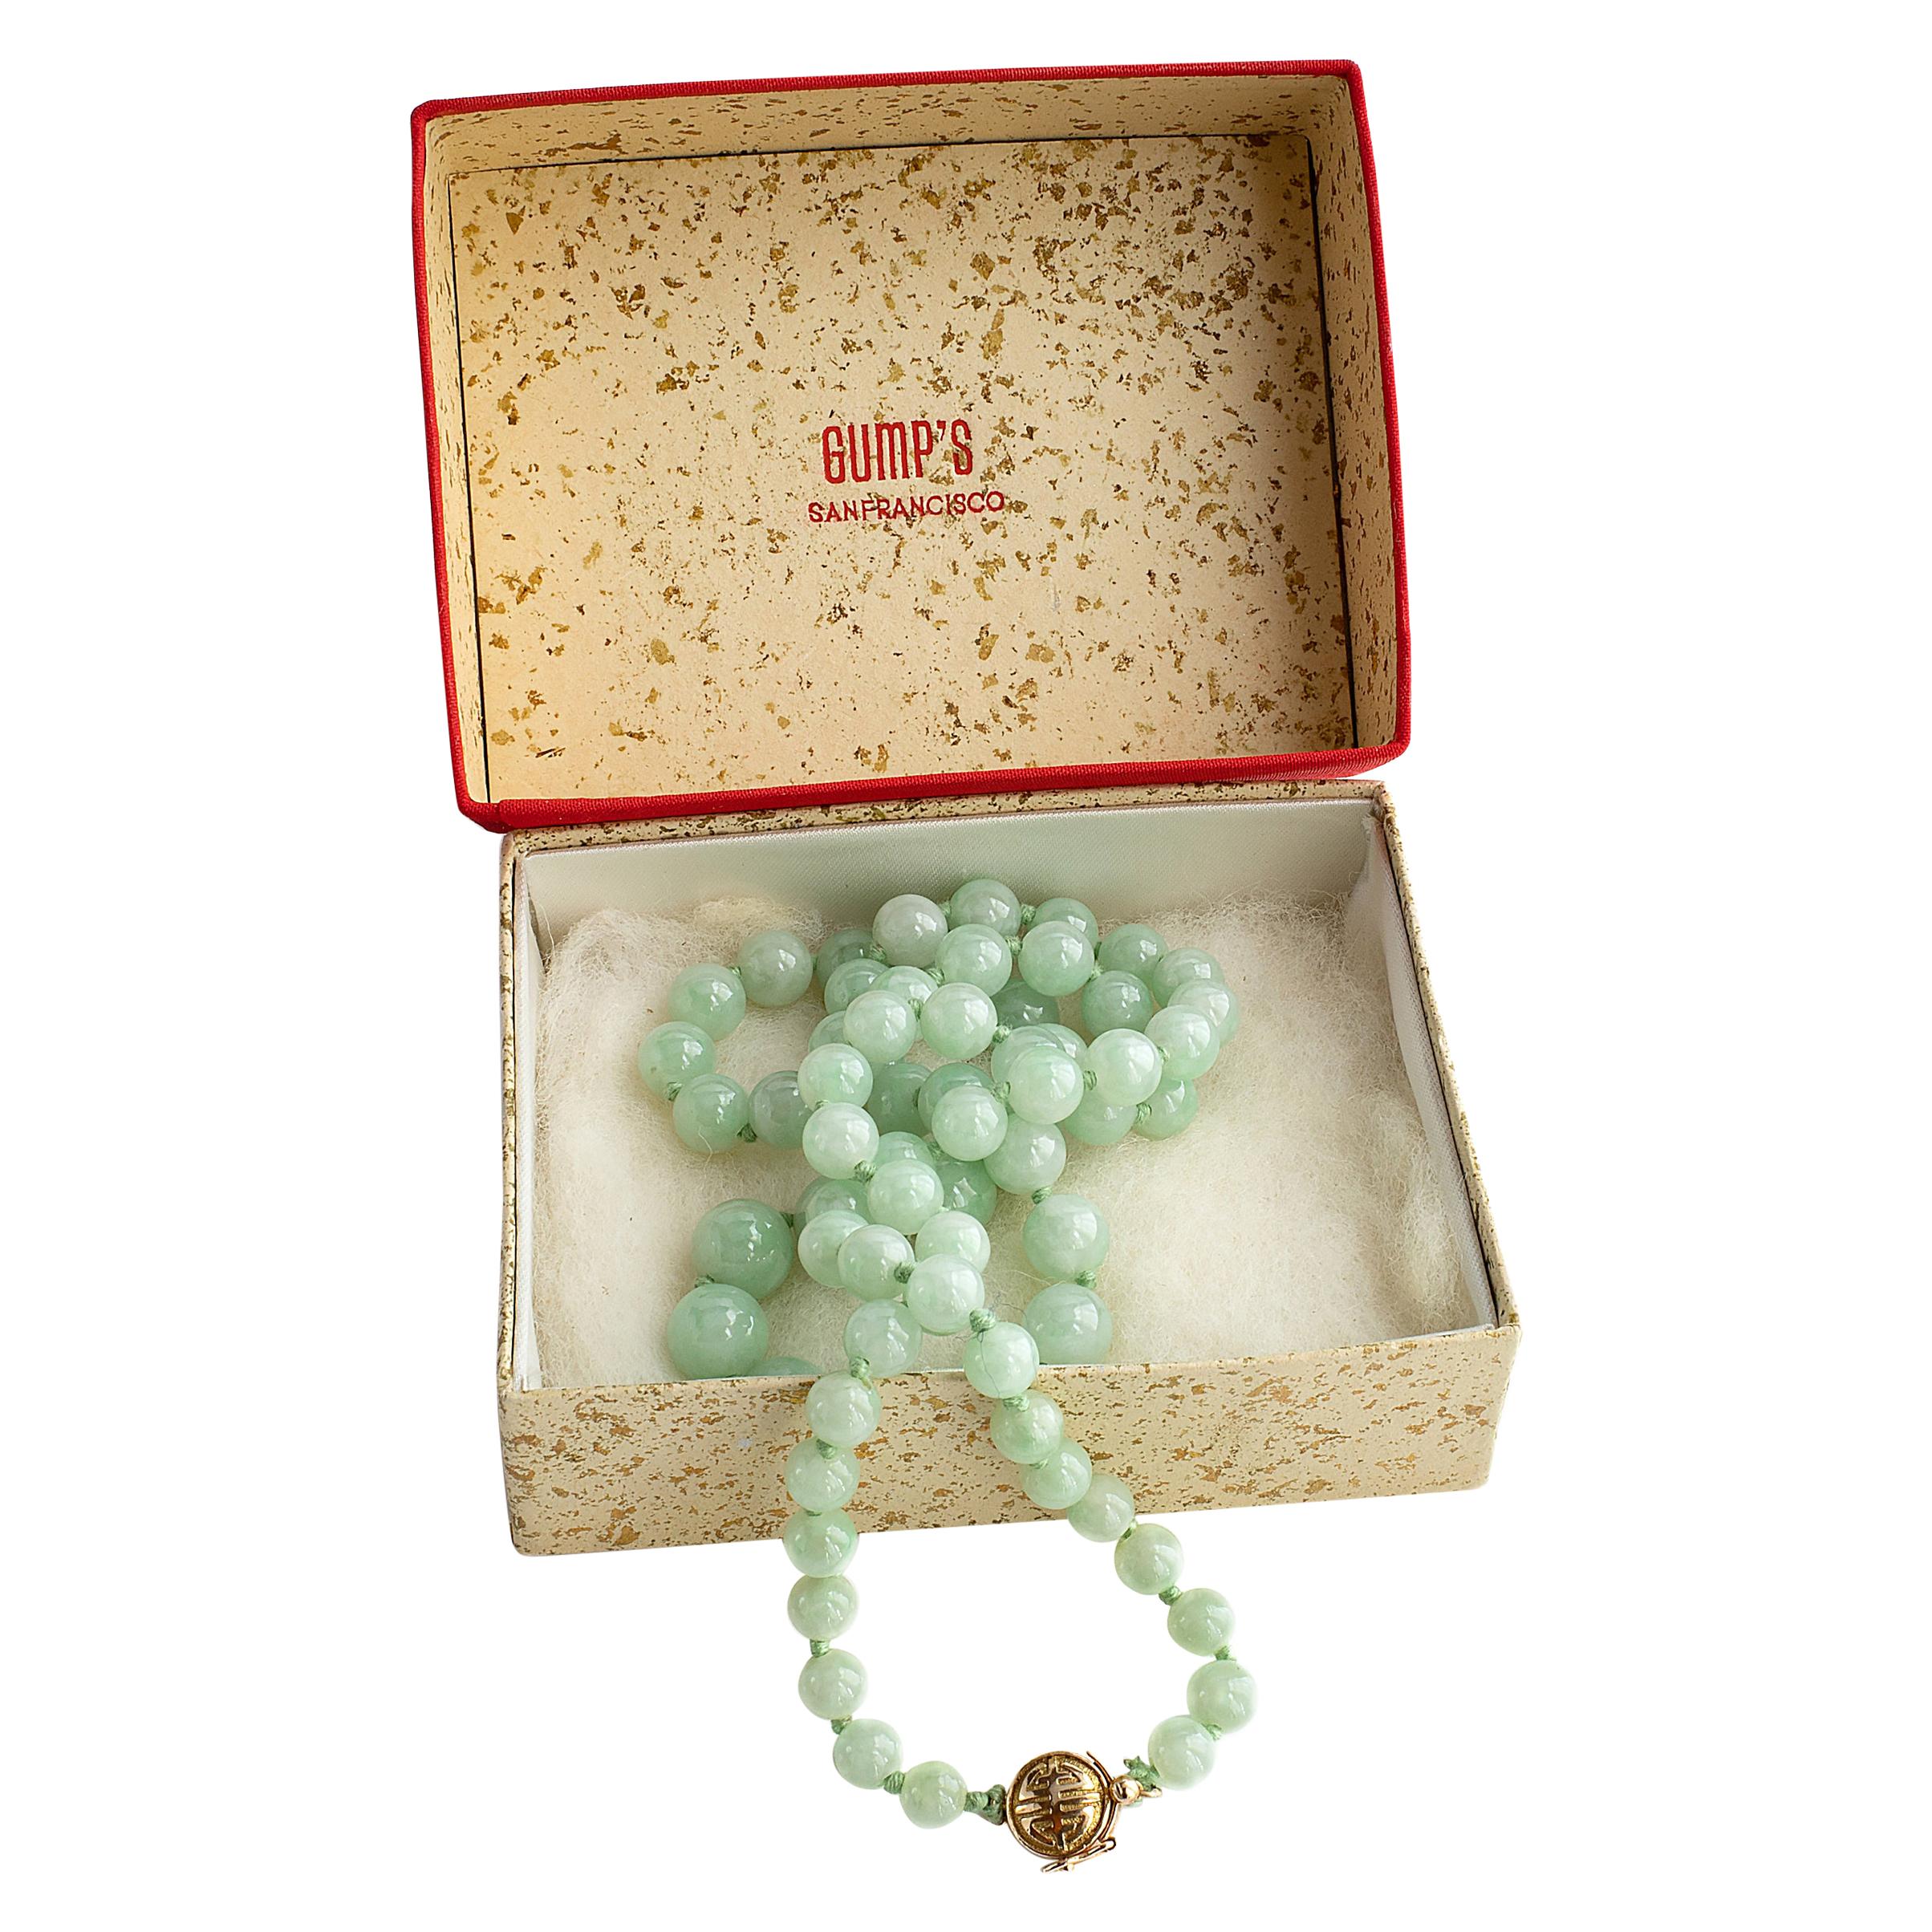 Gump's Jadeite Jade Necklace in Original Box